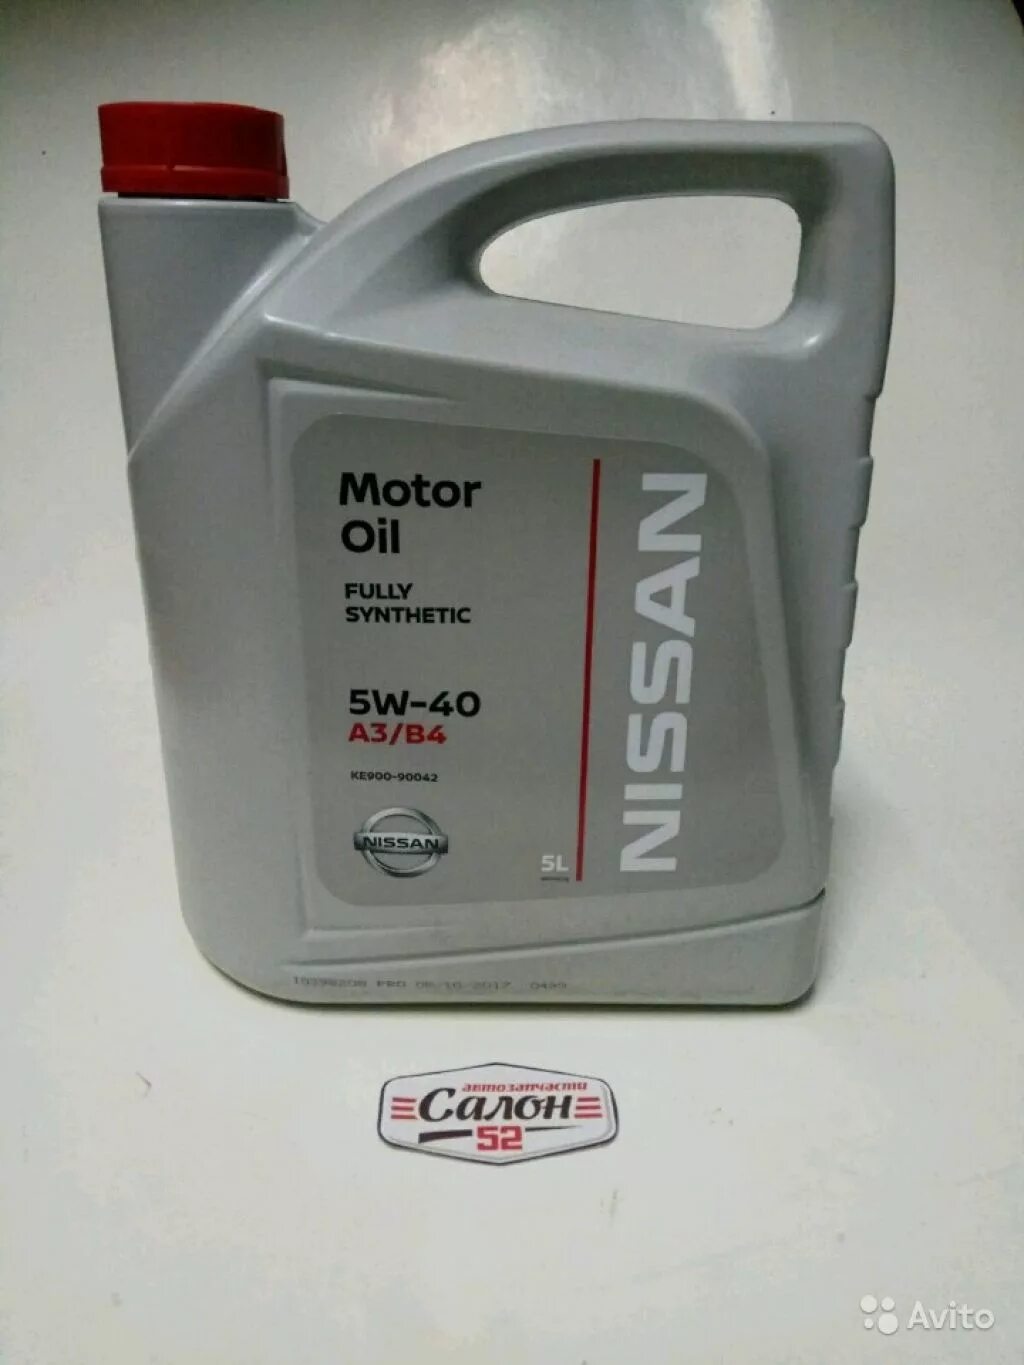 Nissan 5w40. Ke900-90042 5w40. Nissan ke900-90042. Nissan ke900-90042-va масло моторное.